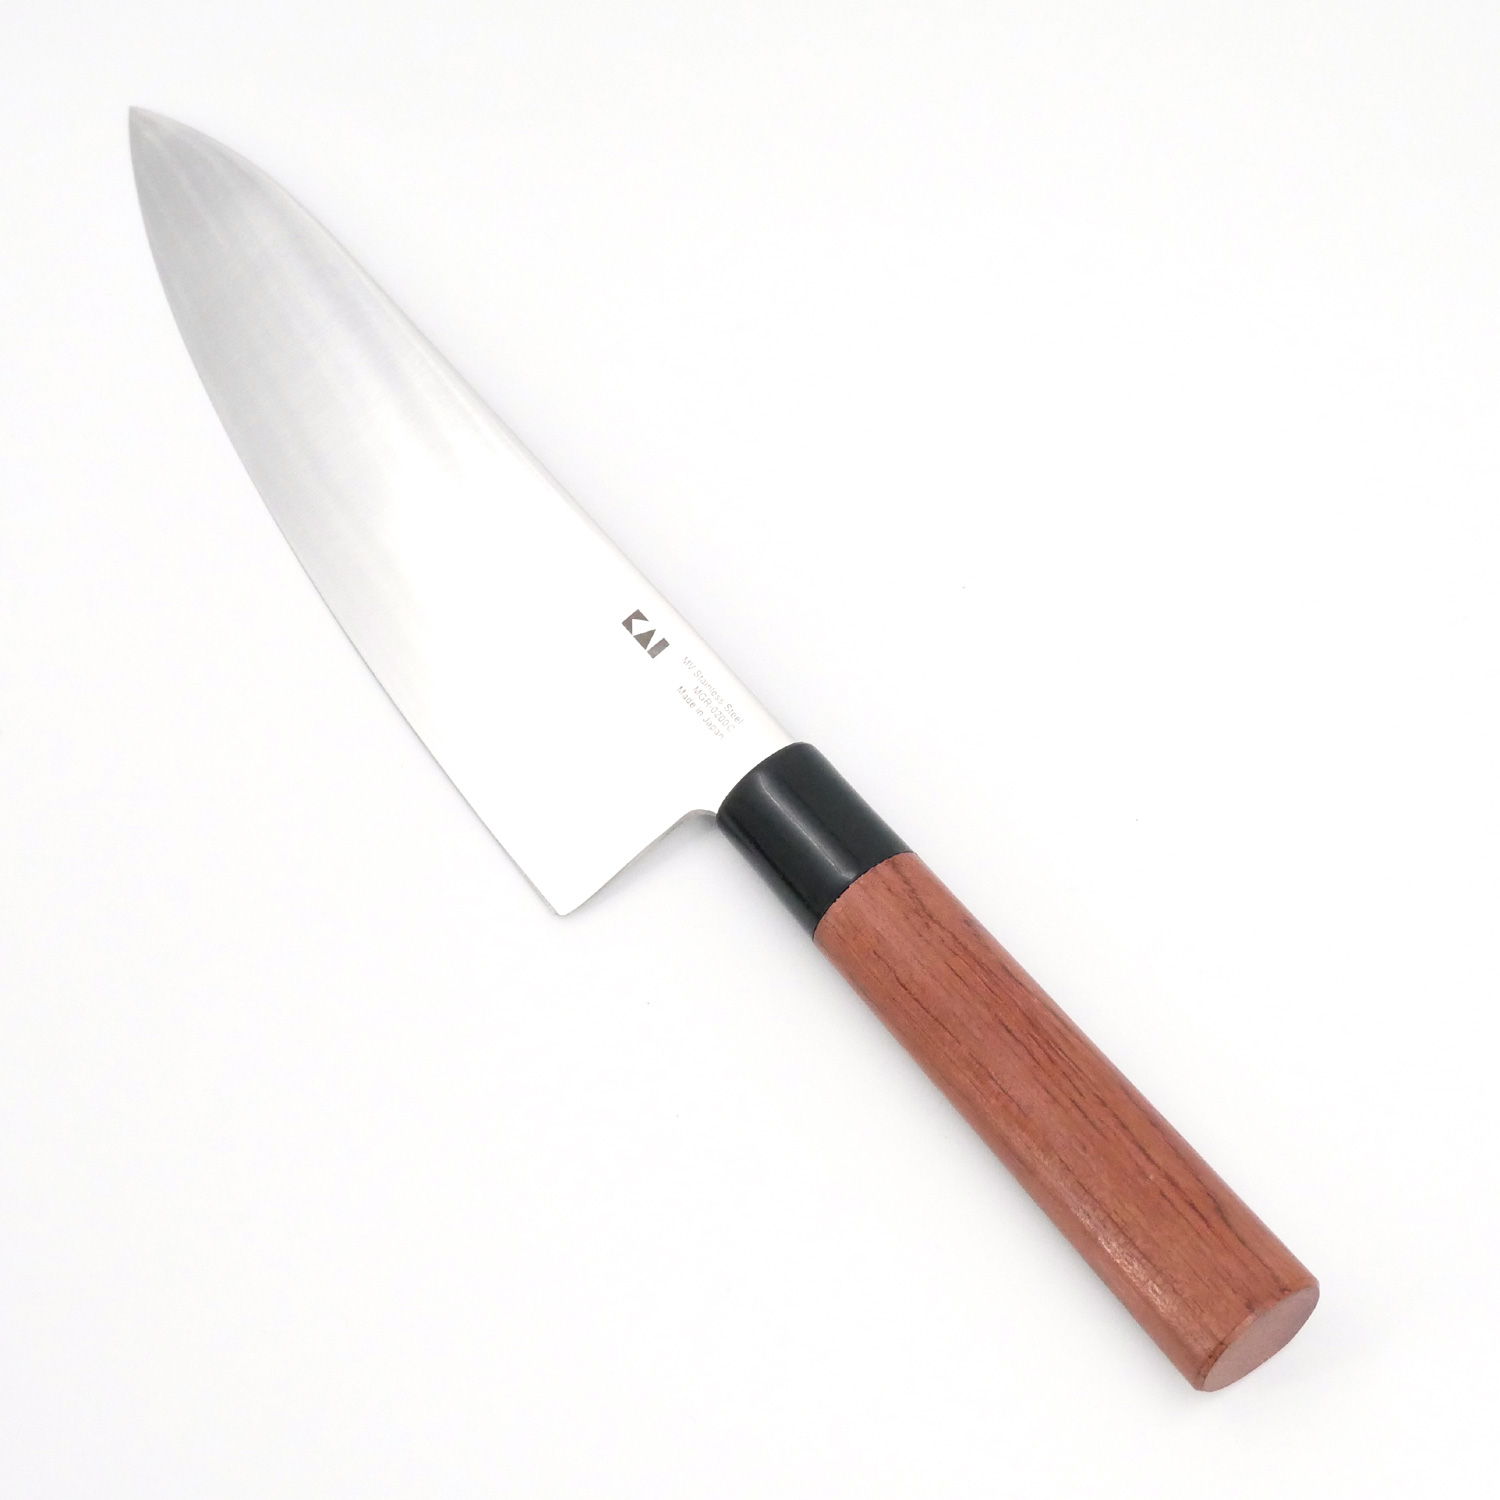 Cuchillo japonés utilitario con hoja de 15 cm Red Wood de Kai.